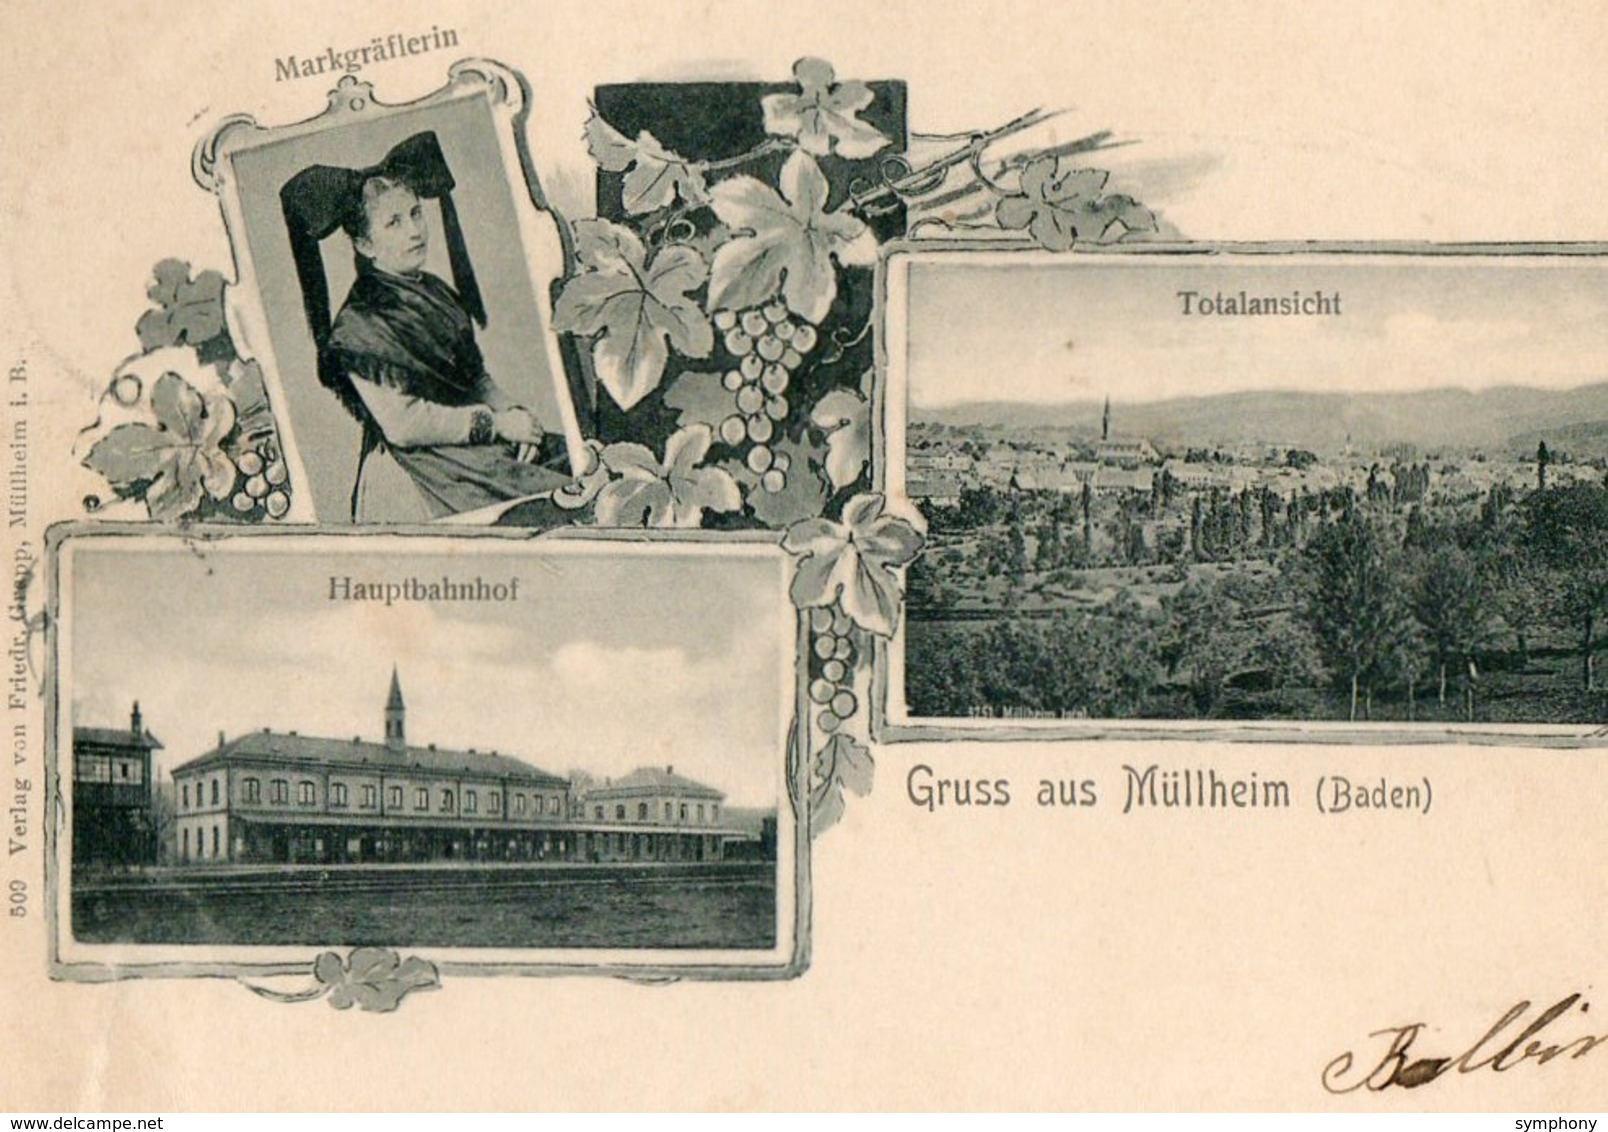 Allemagne. CPA.  MUELLHEIM. MULLHEIM.  Gruss Aus Müllheim, Markgräflerin, Totalansicht, Hauptbanhof. 1903. - Muellheim